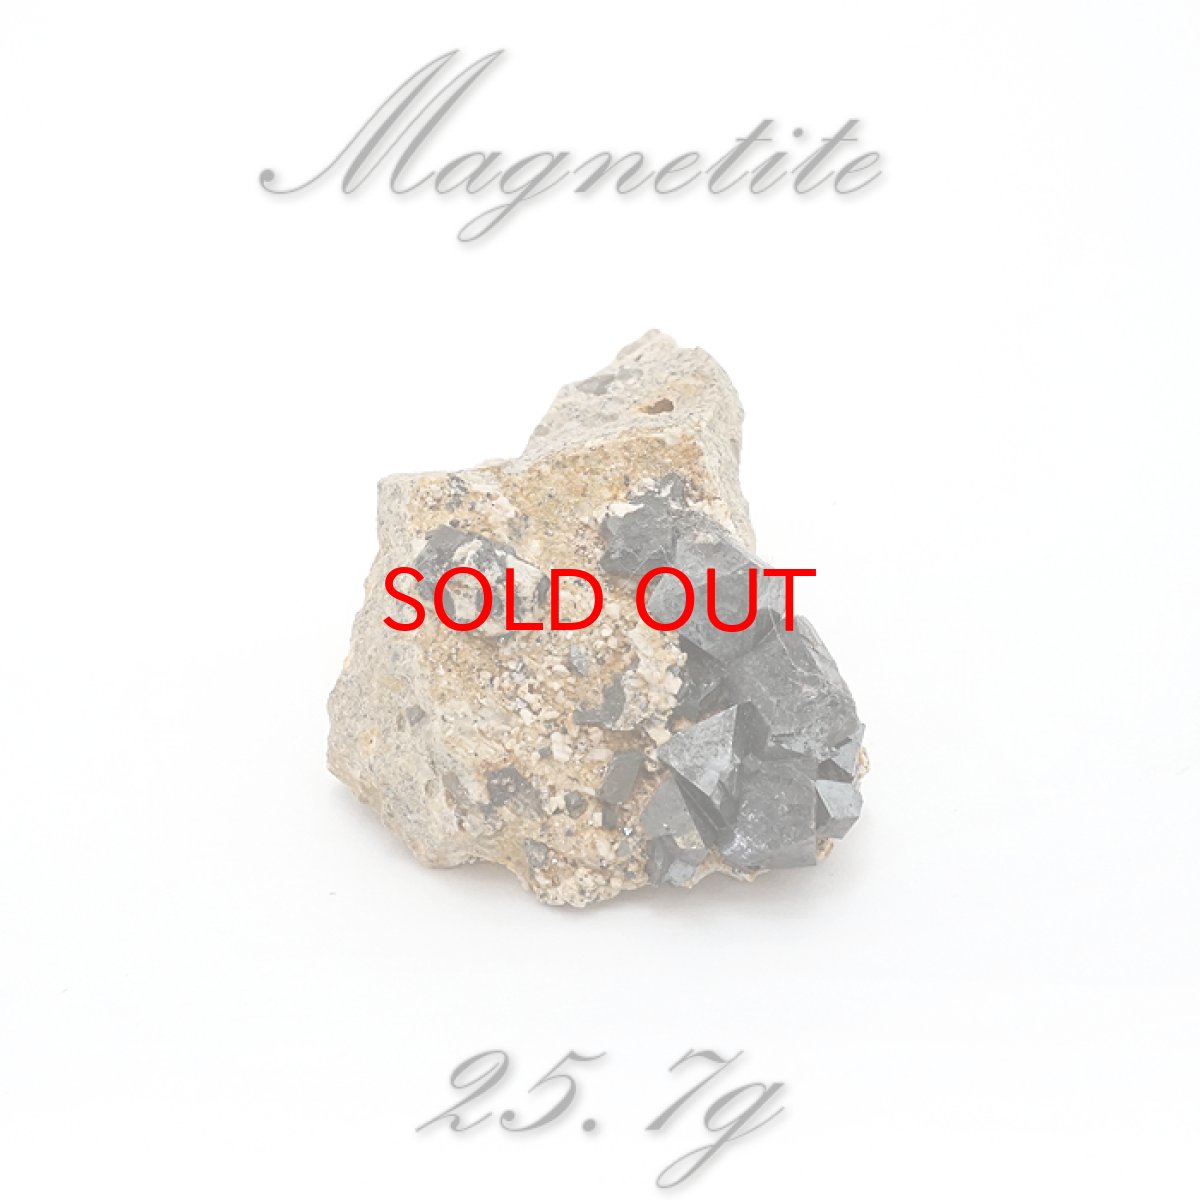 画像1: 【 一点もの 】 マグネタイト 25.7g ボリビア産 Magnetite JapanCrystal 原石 裸石 稀少石 浄化 天然石 パワーストーン カラーストーン (1)